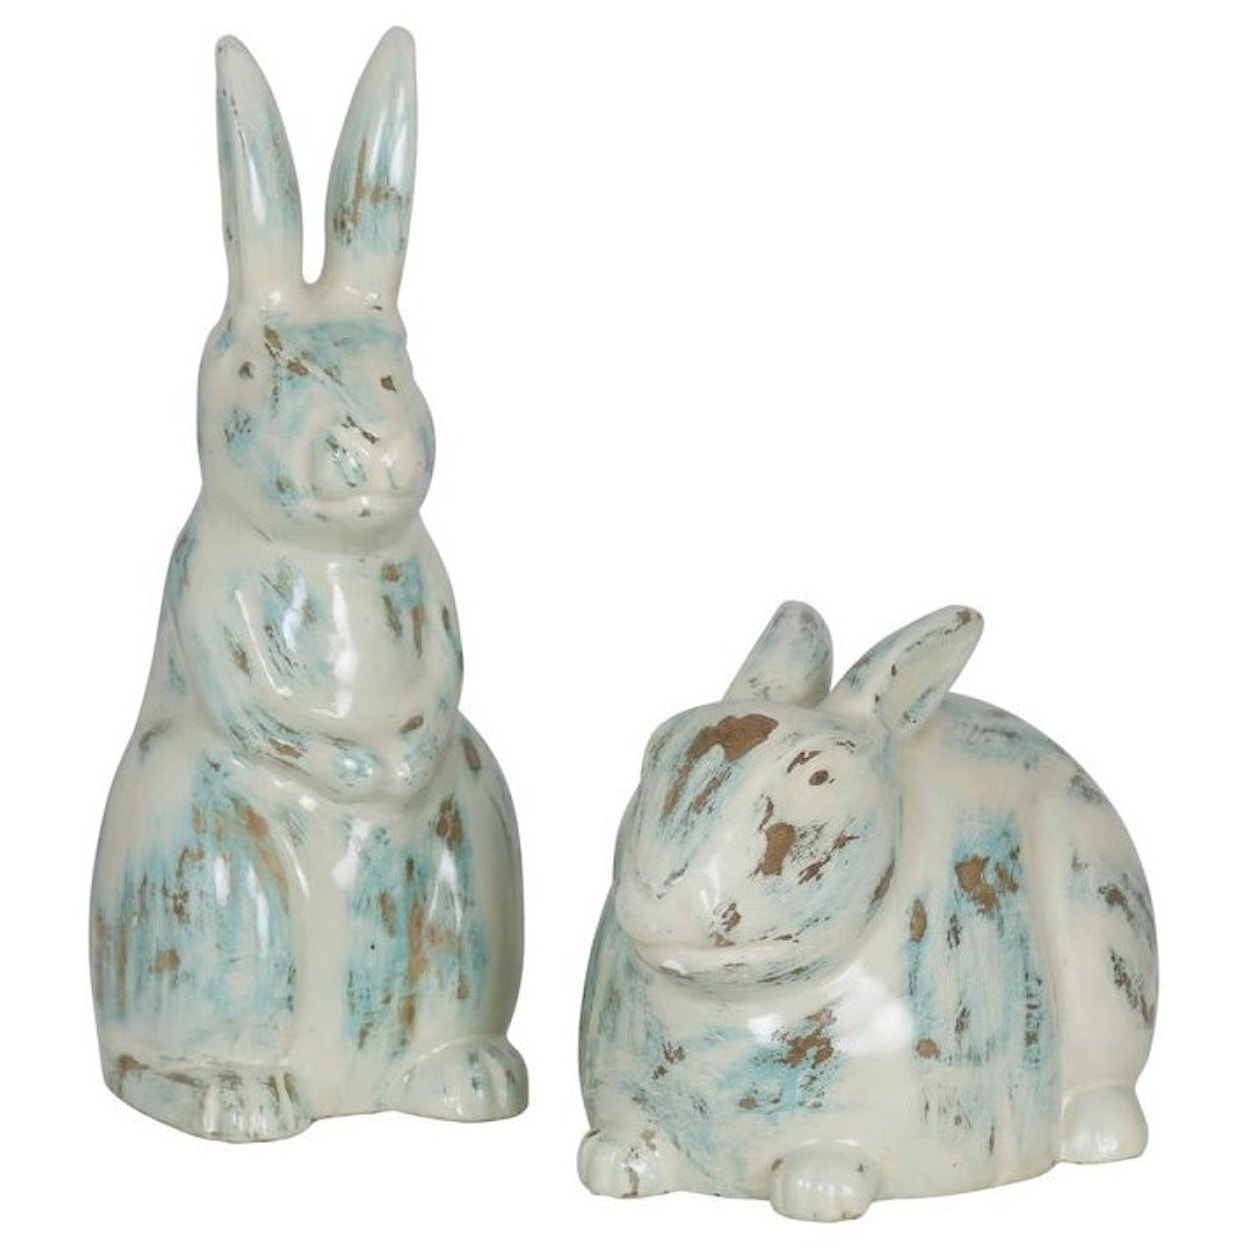 StyleCraft Accessories Rabbit Figurines